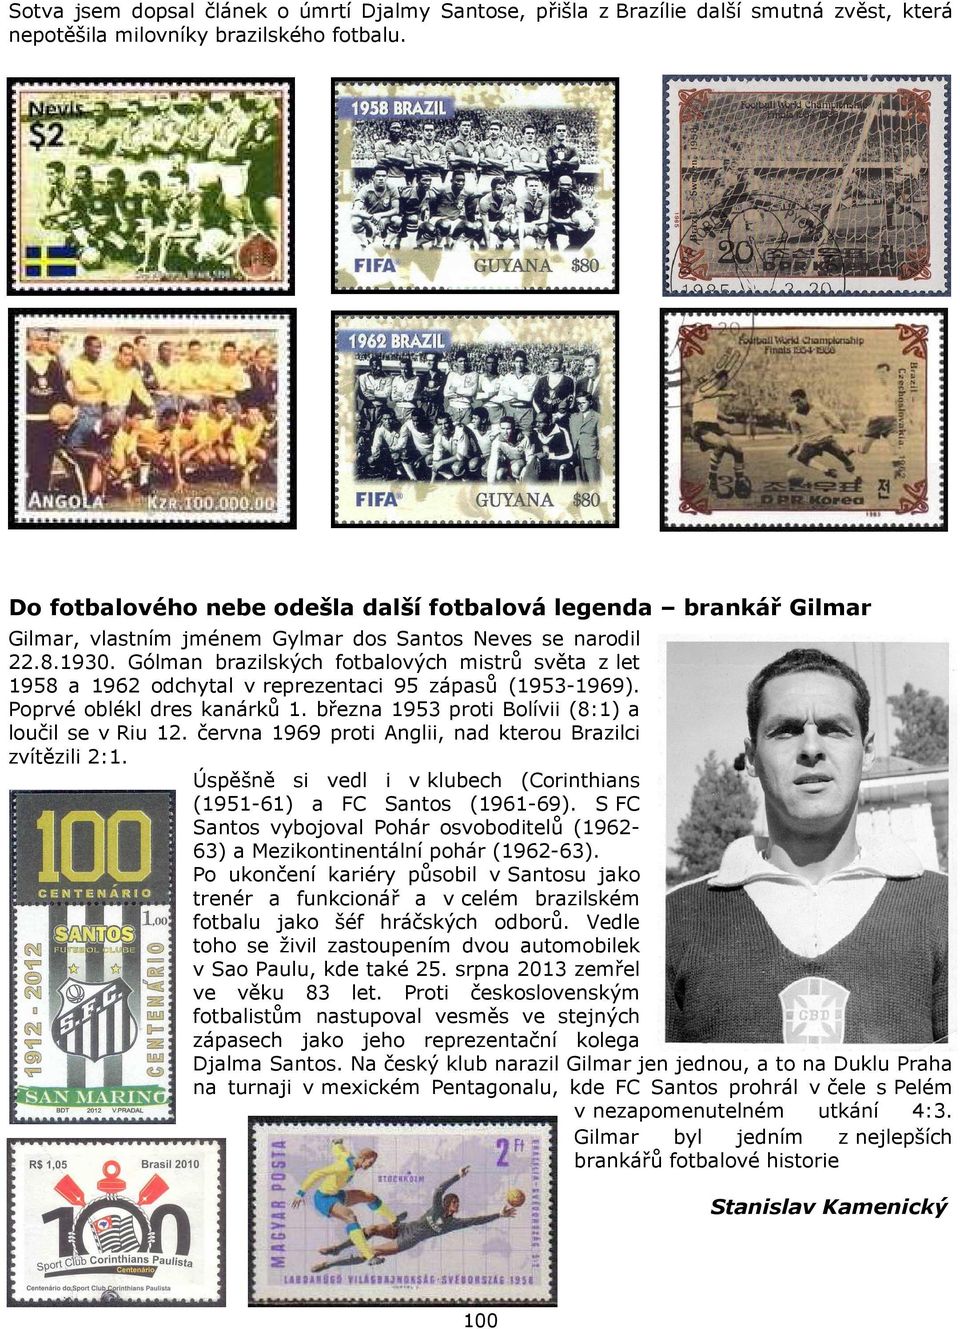 Gólman brazilských fotbalových mistrů světa z let 1958 a 1962 odchytal v reprezentaci 95 zápasů (1953-1969). Poprvé oblékl dres kanárků 1. března 1953 proti Bolívii (8:1) a loučil se v Riu 12.